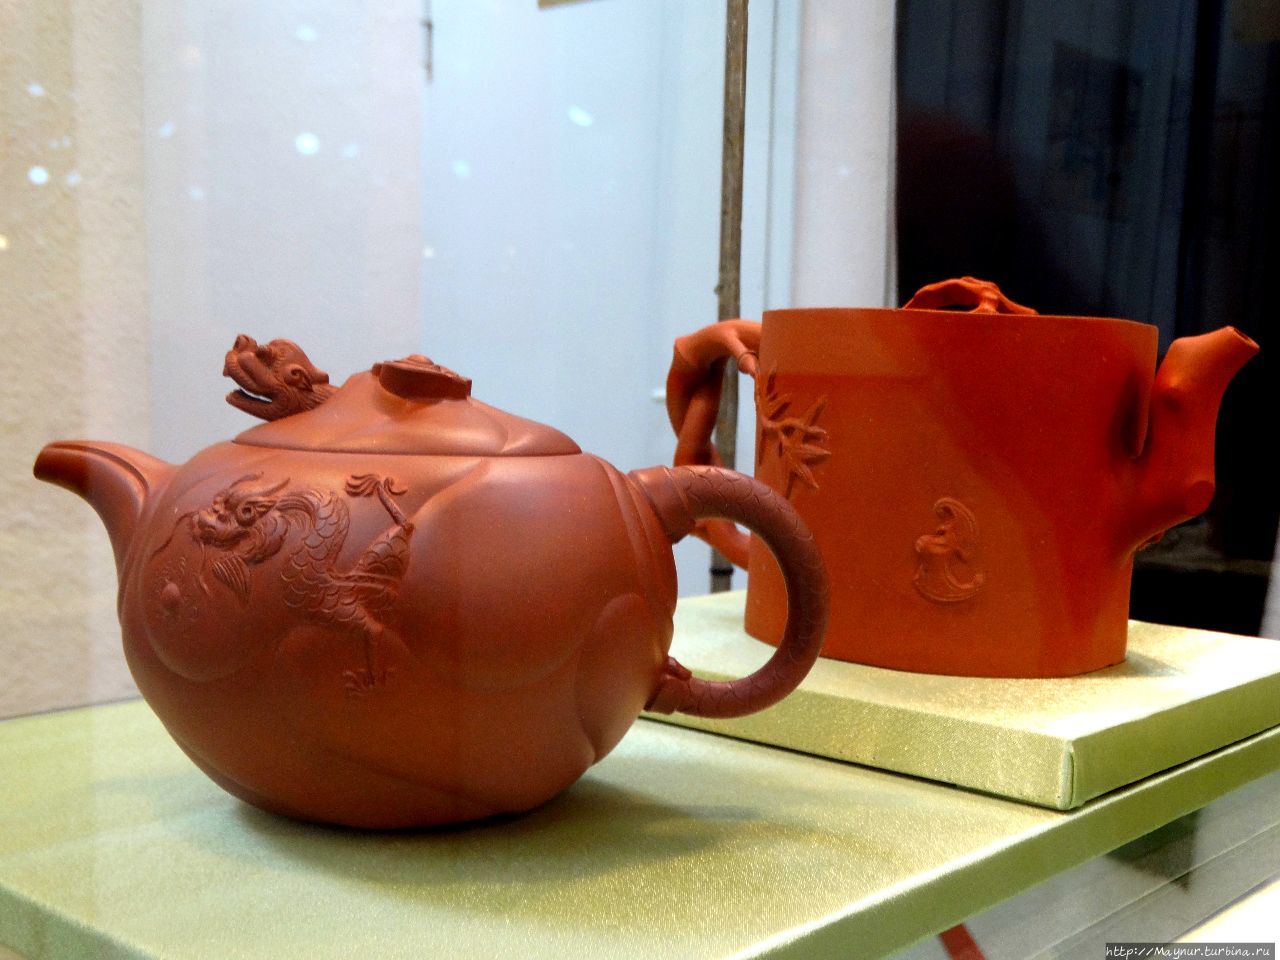 Чайник с изображением цветов сливы и бамбука.
Чайник с изображением дракона и карпа. Южно-Сахалинск, Россия